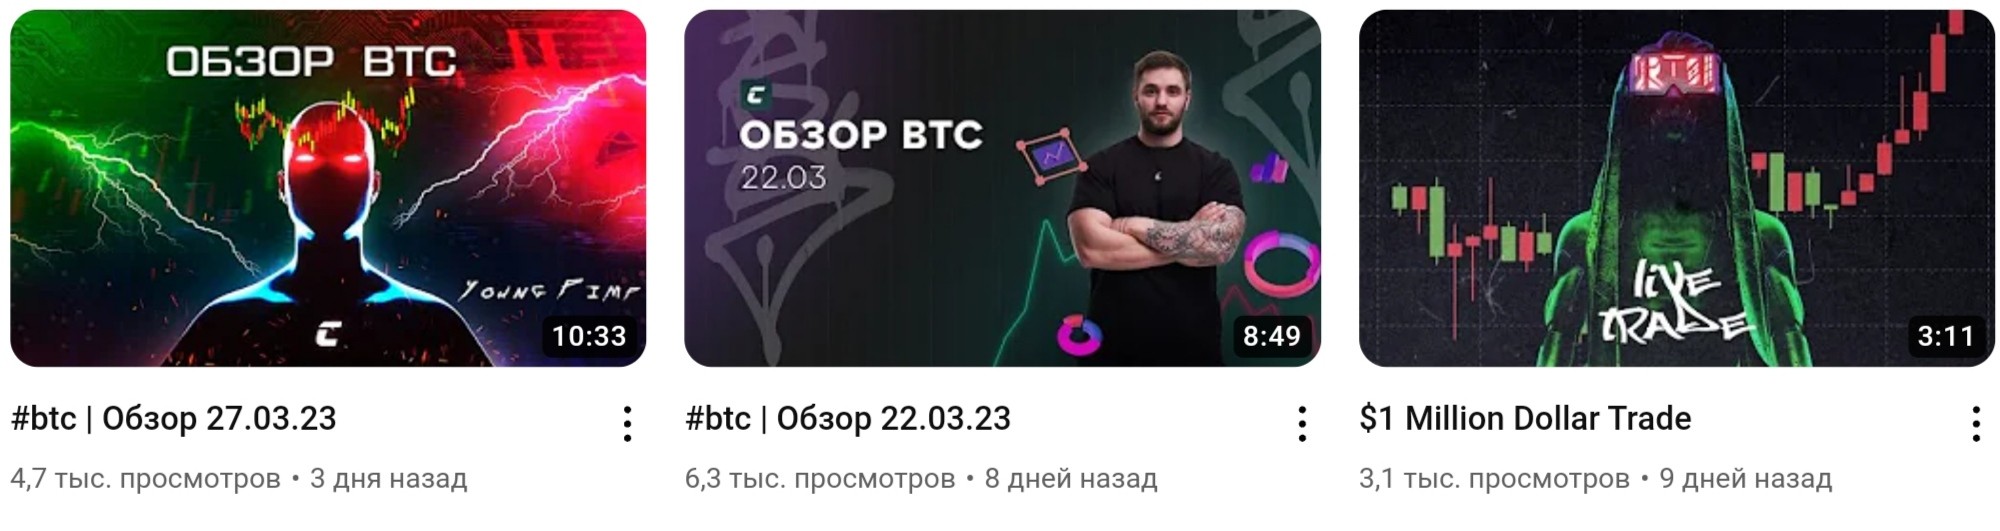 Cryptology school ютуб Kostya kudo